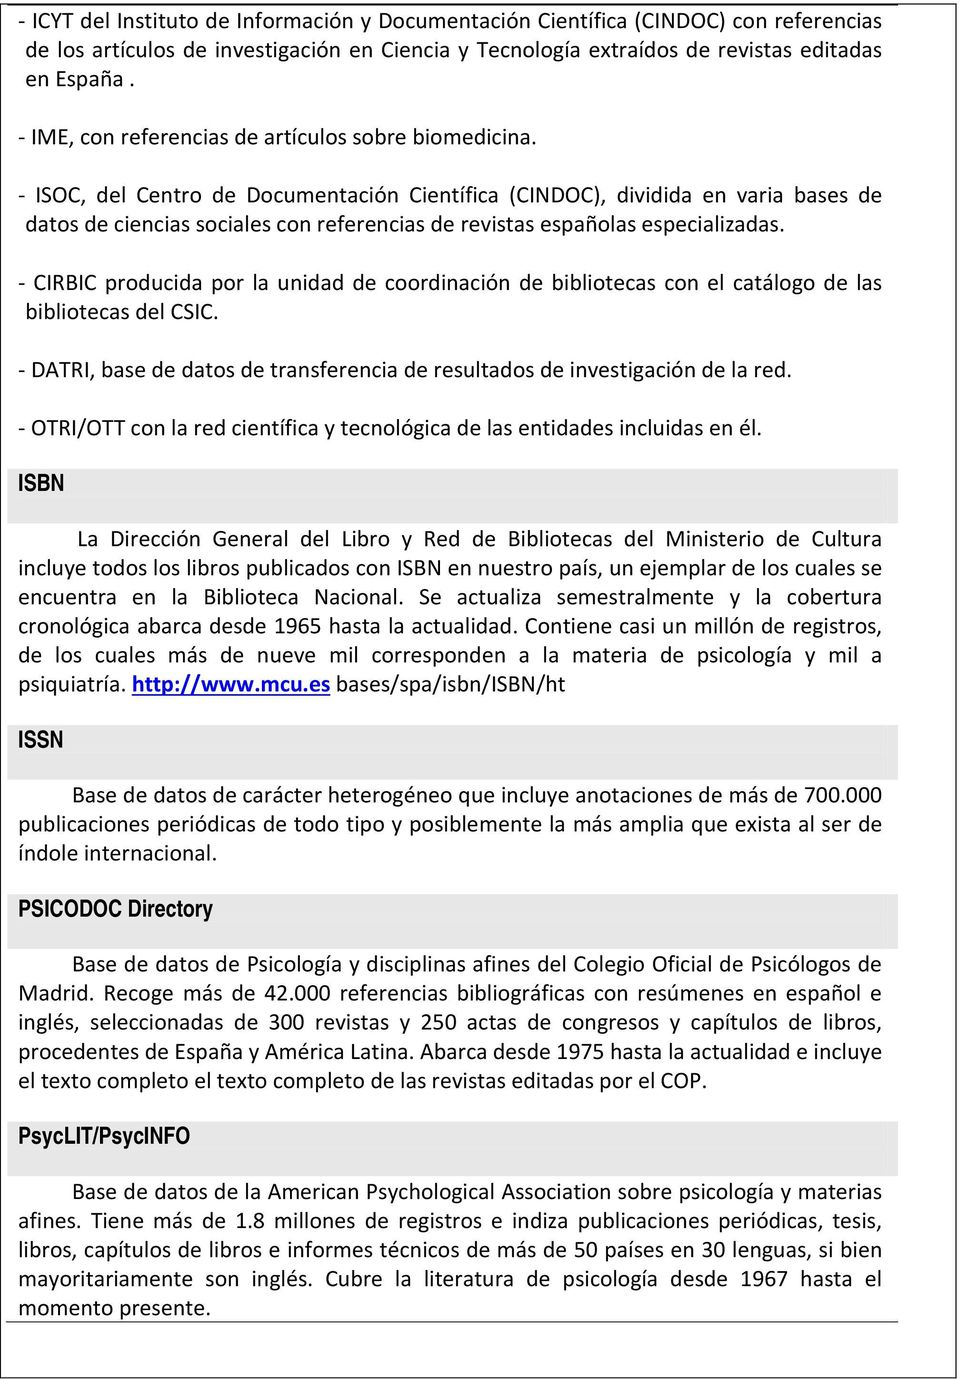 - ISOC, del Centro de Documentación Científica (CINDOC), dividida en varia bases de datos de ciencias sociales con referencias de revistas españolas especializadas.